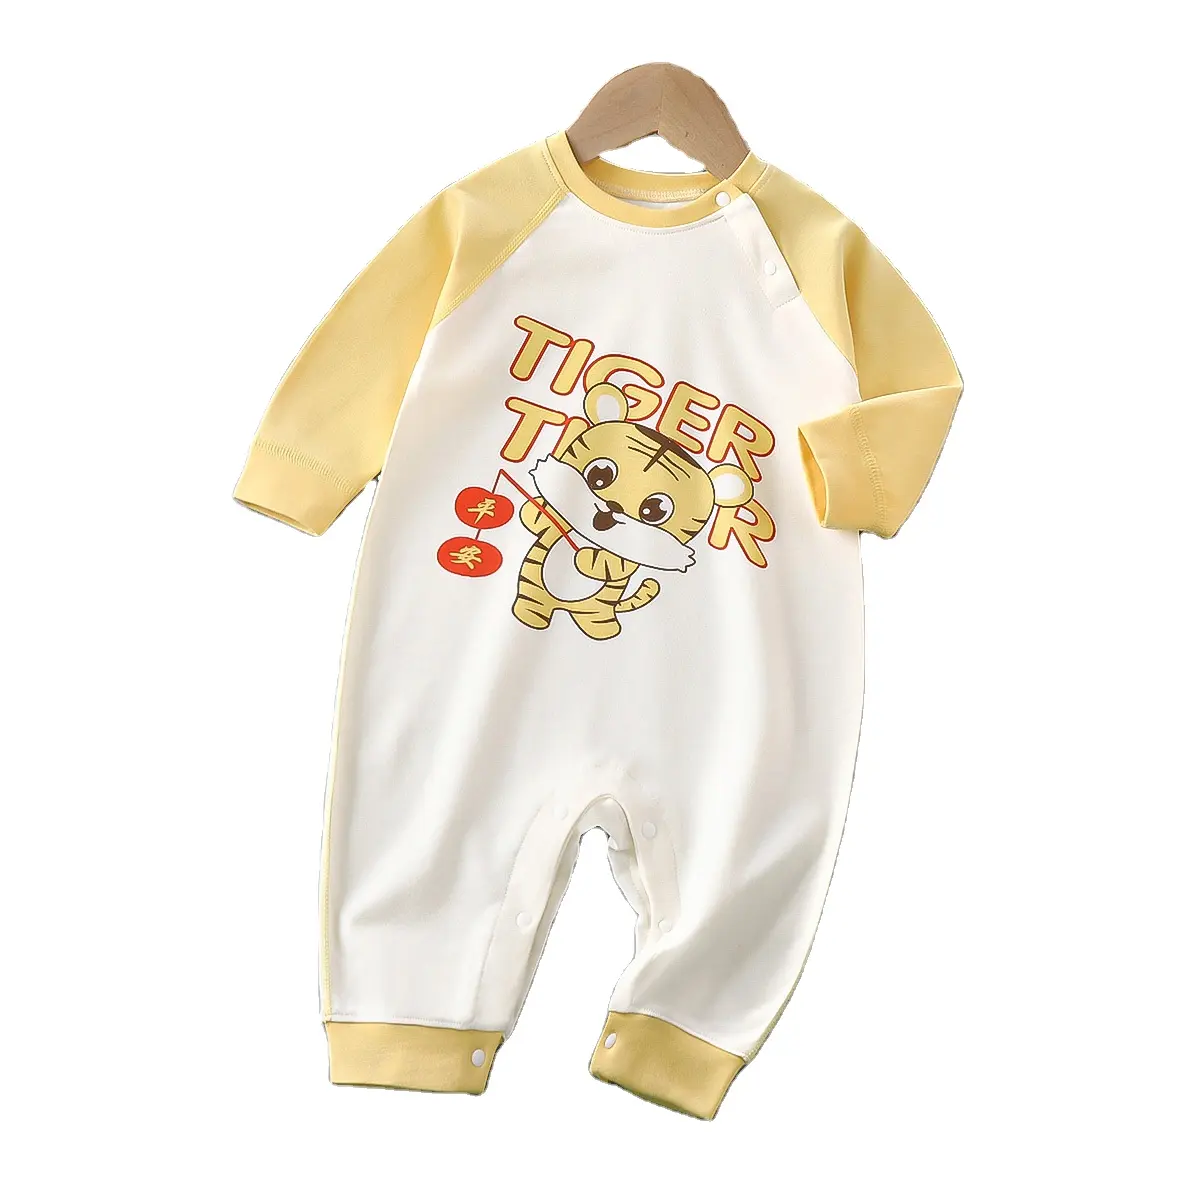 Özel organik pamuk/stokta % 100% pamuk yumuşak bebek Bodysuit düz renk bebek tulumu uzun kollu Unisex bebek giysileri